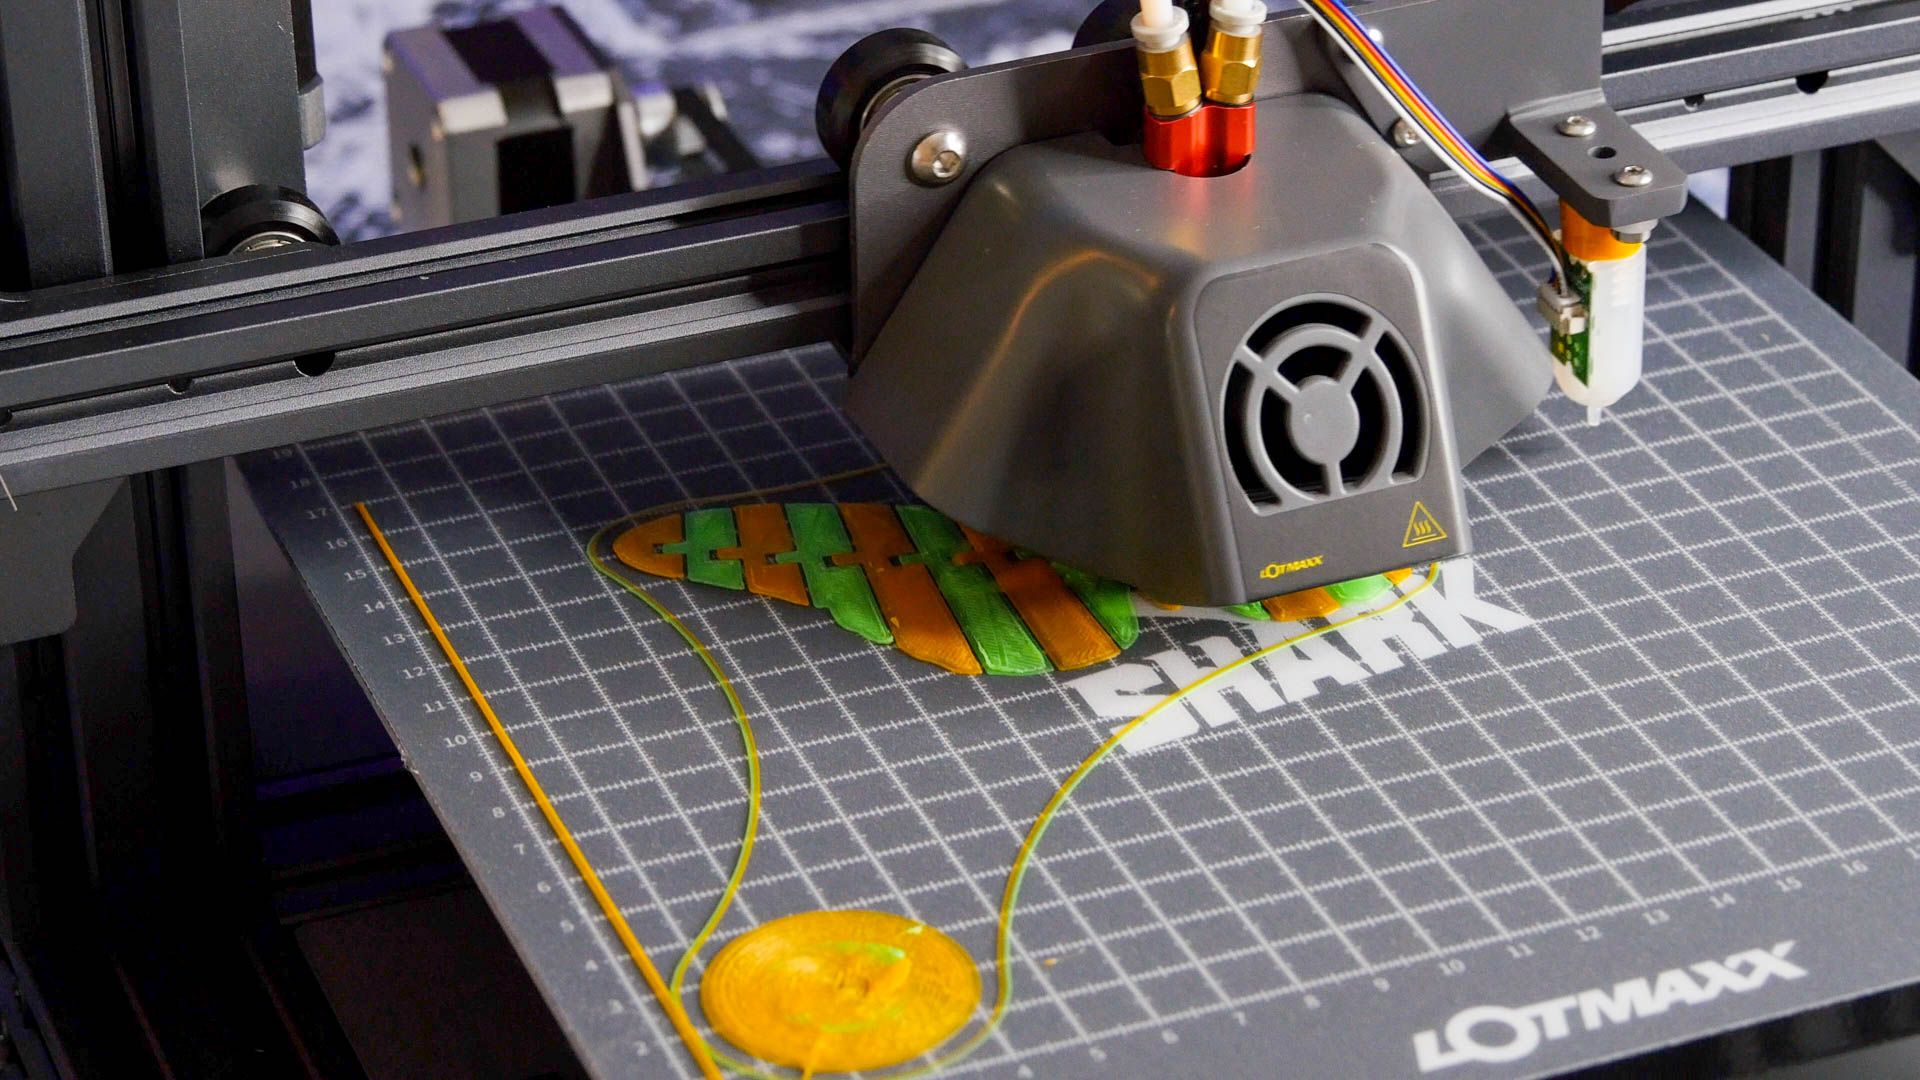 lotmaxx bicolor printing - Lotmaxx SC-10 Shark Review: affidabile stampante 3D per principianti, ma forse salta gli aggiornamenti